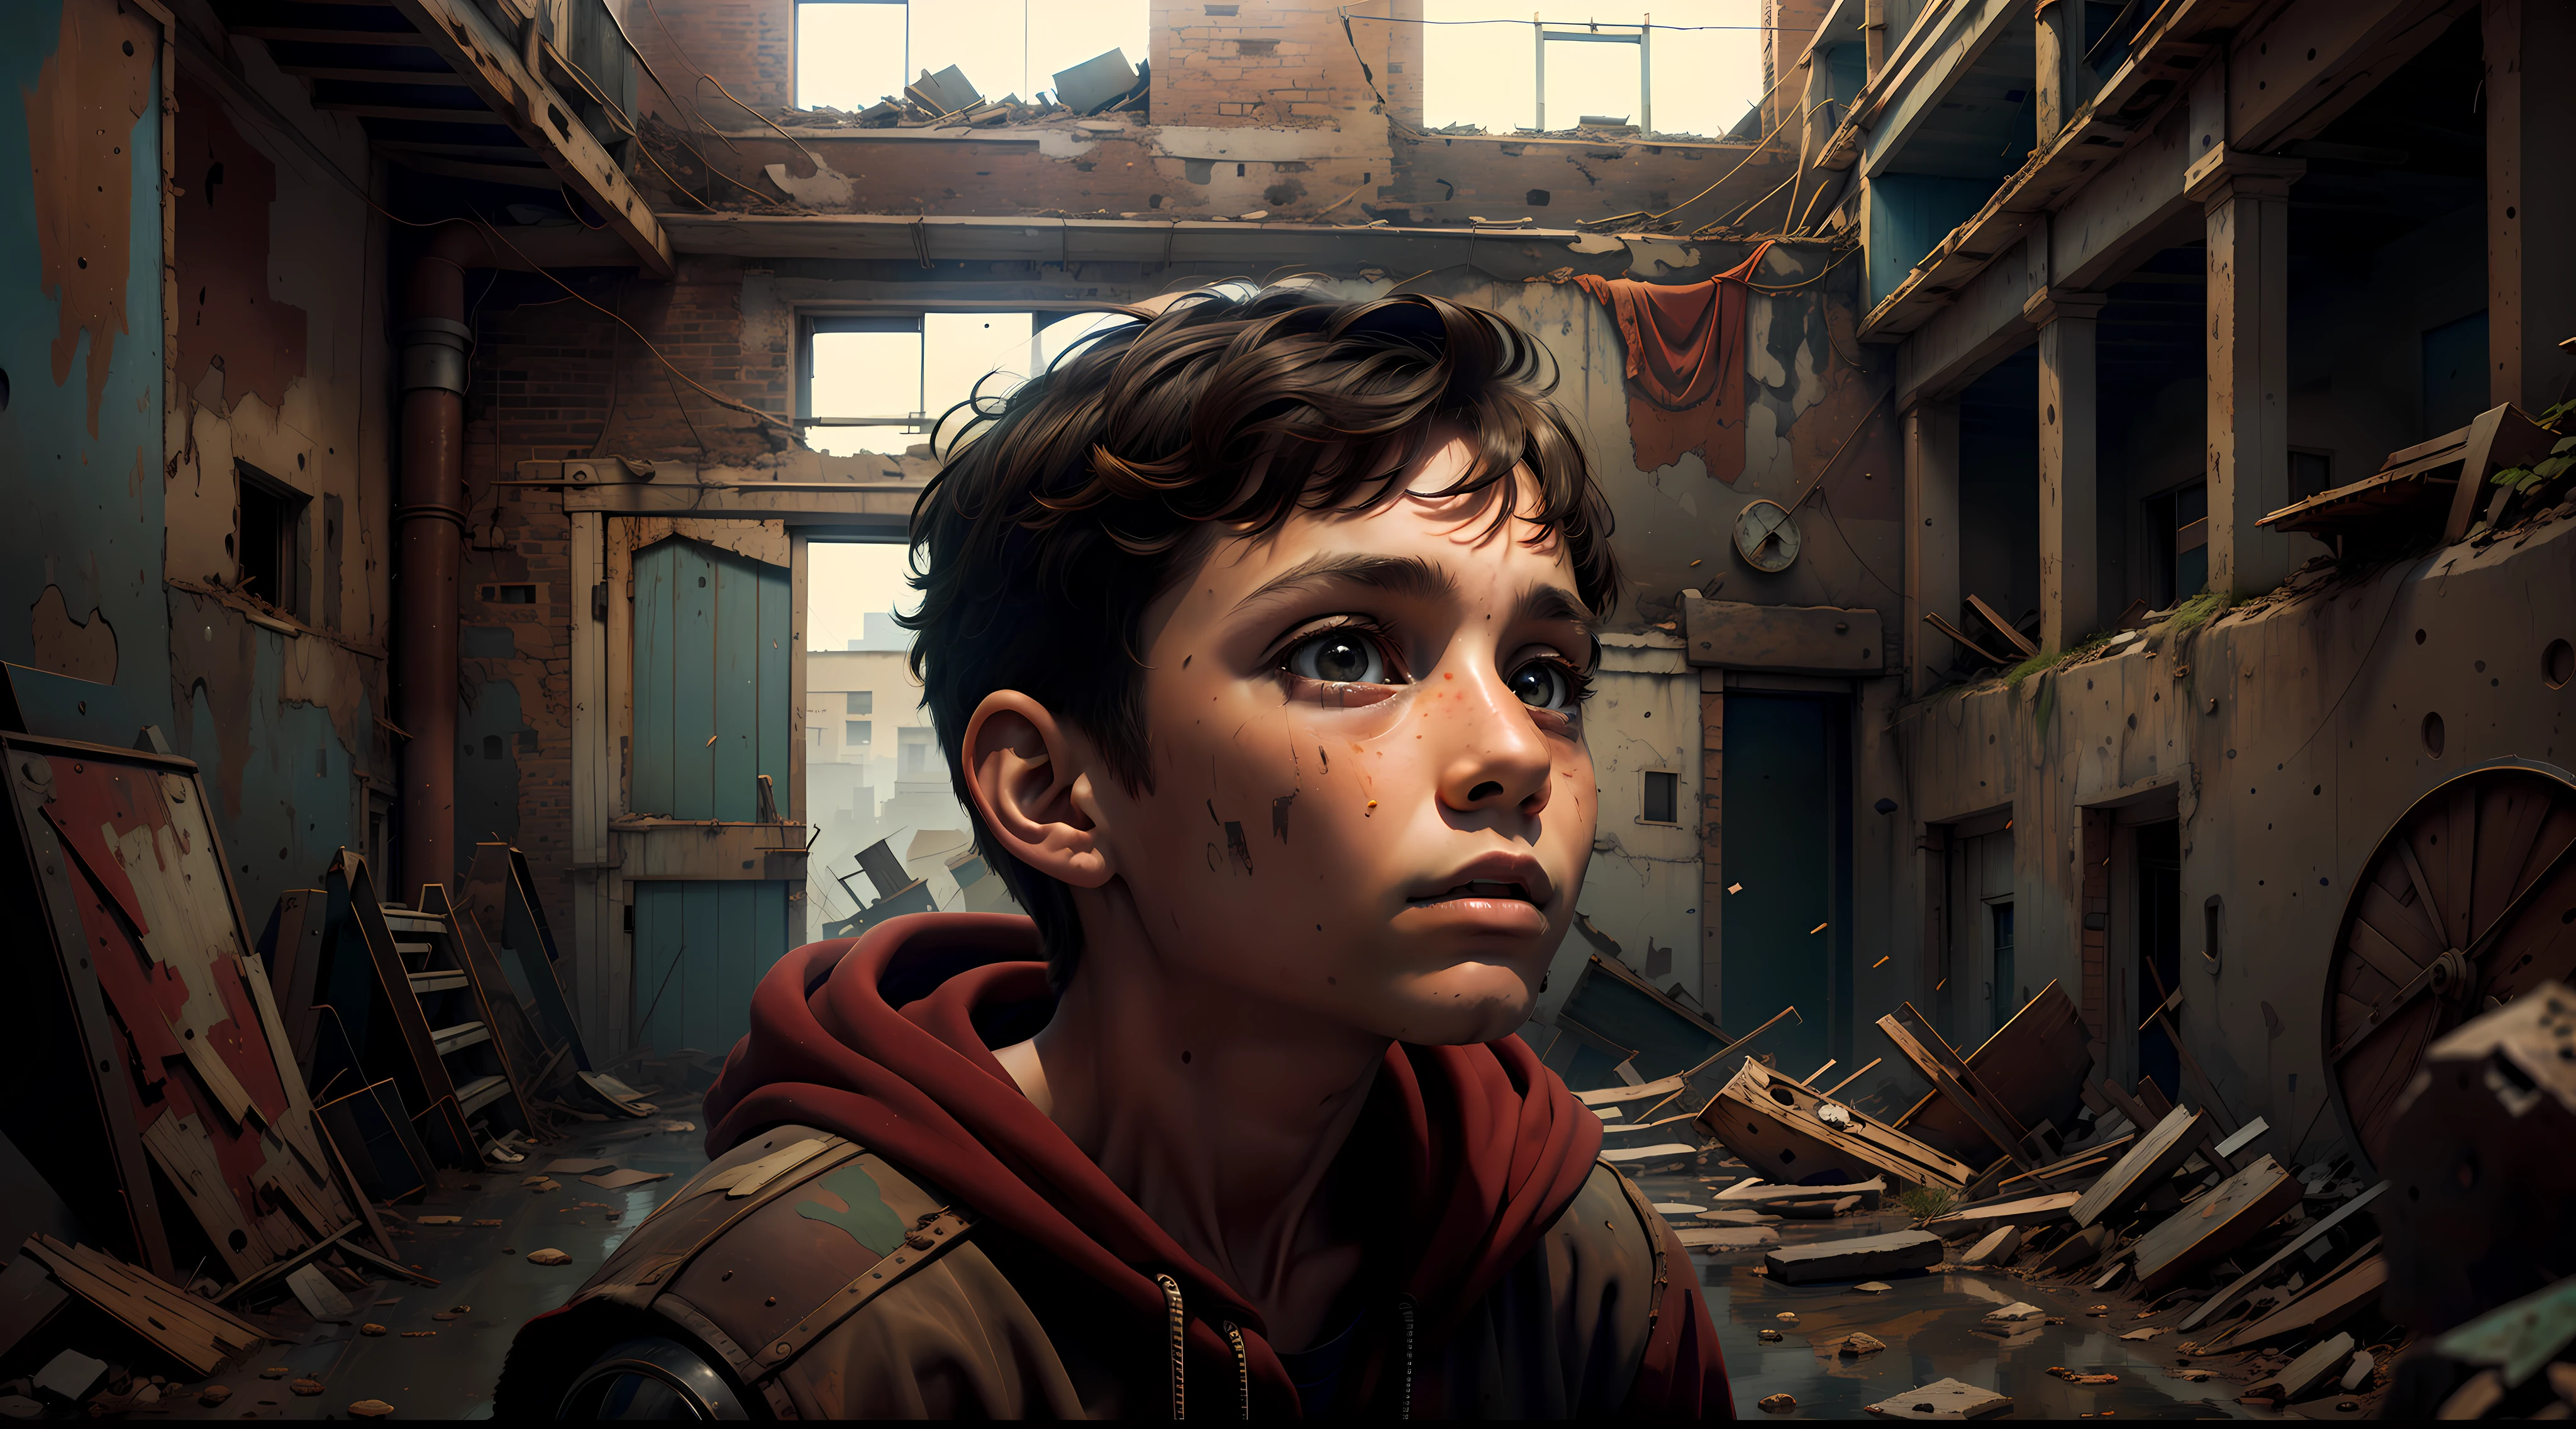 好奇心旺盛な12歳のマックス, 古いものを覗き込む, 廃工場, 彼の目には驚きの感情が宿っていた.